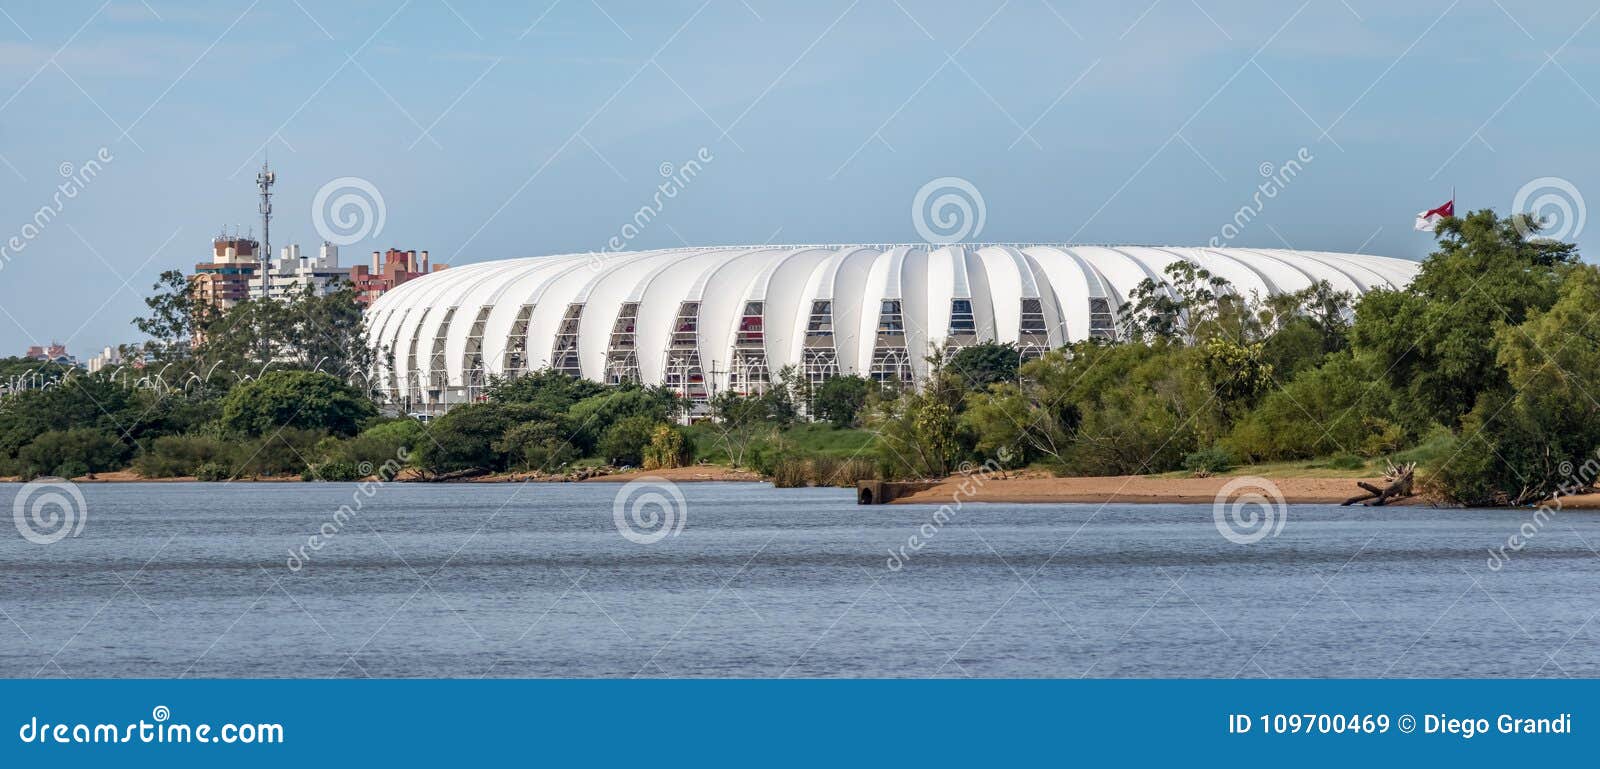 beira rio stadium and guaiba river - porto alegre, rio grande do sul, brazil